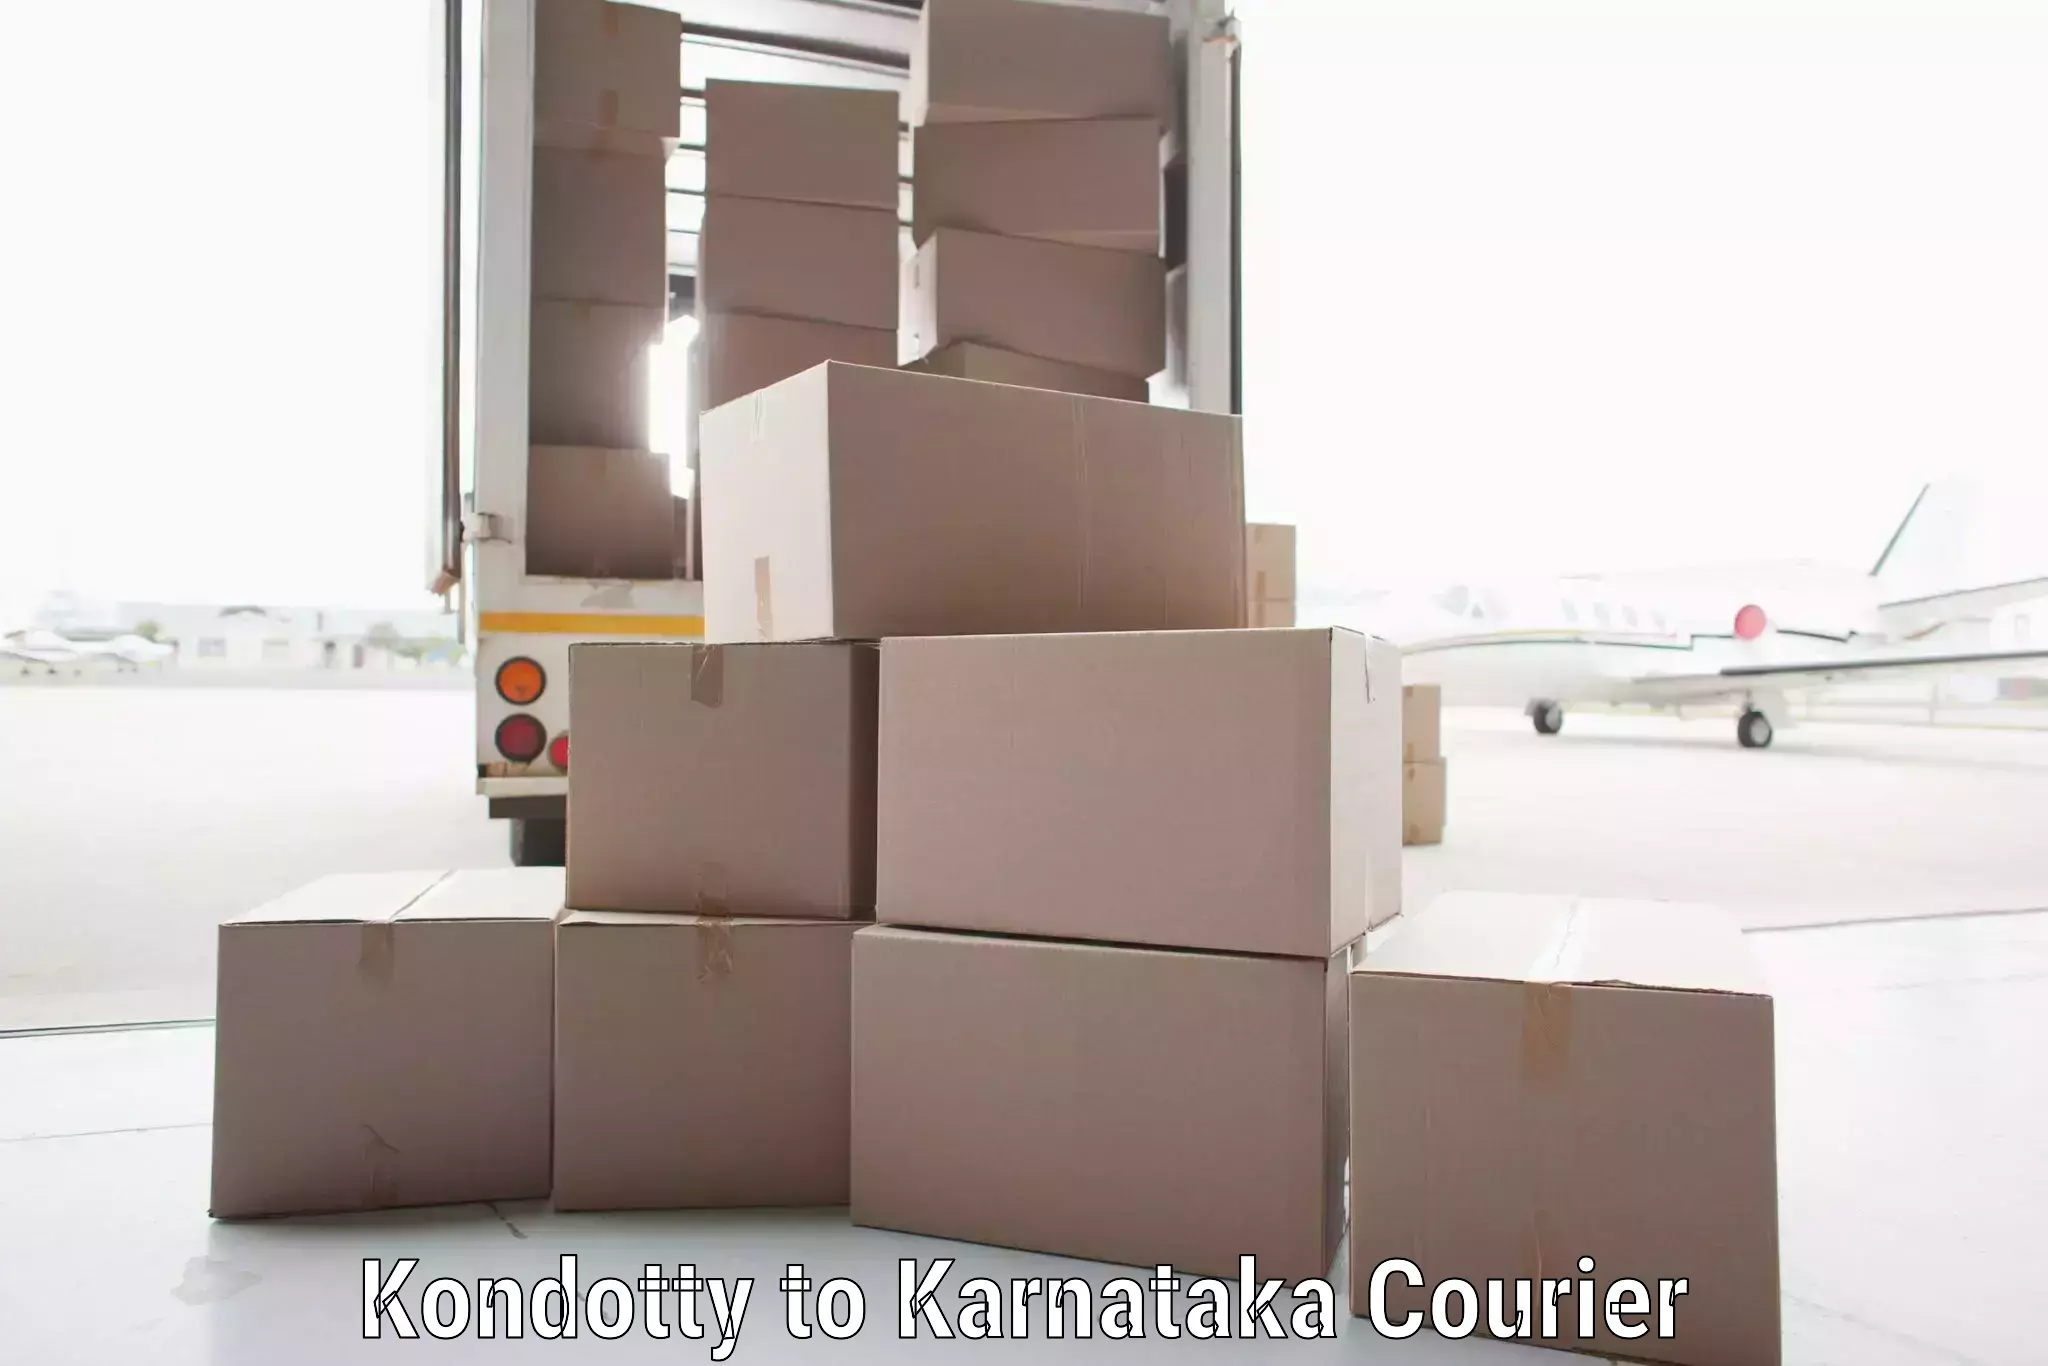 Courier service comparison Kondotty to Chikodi